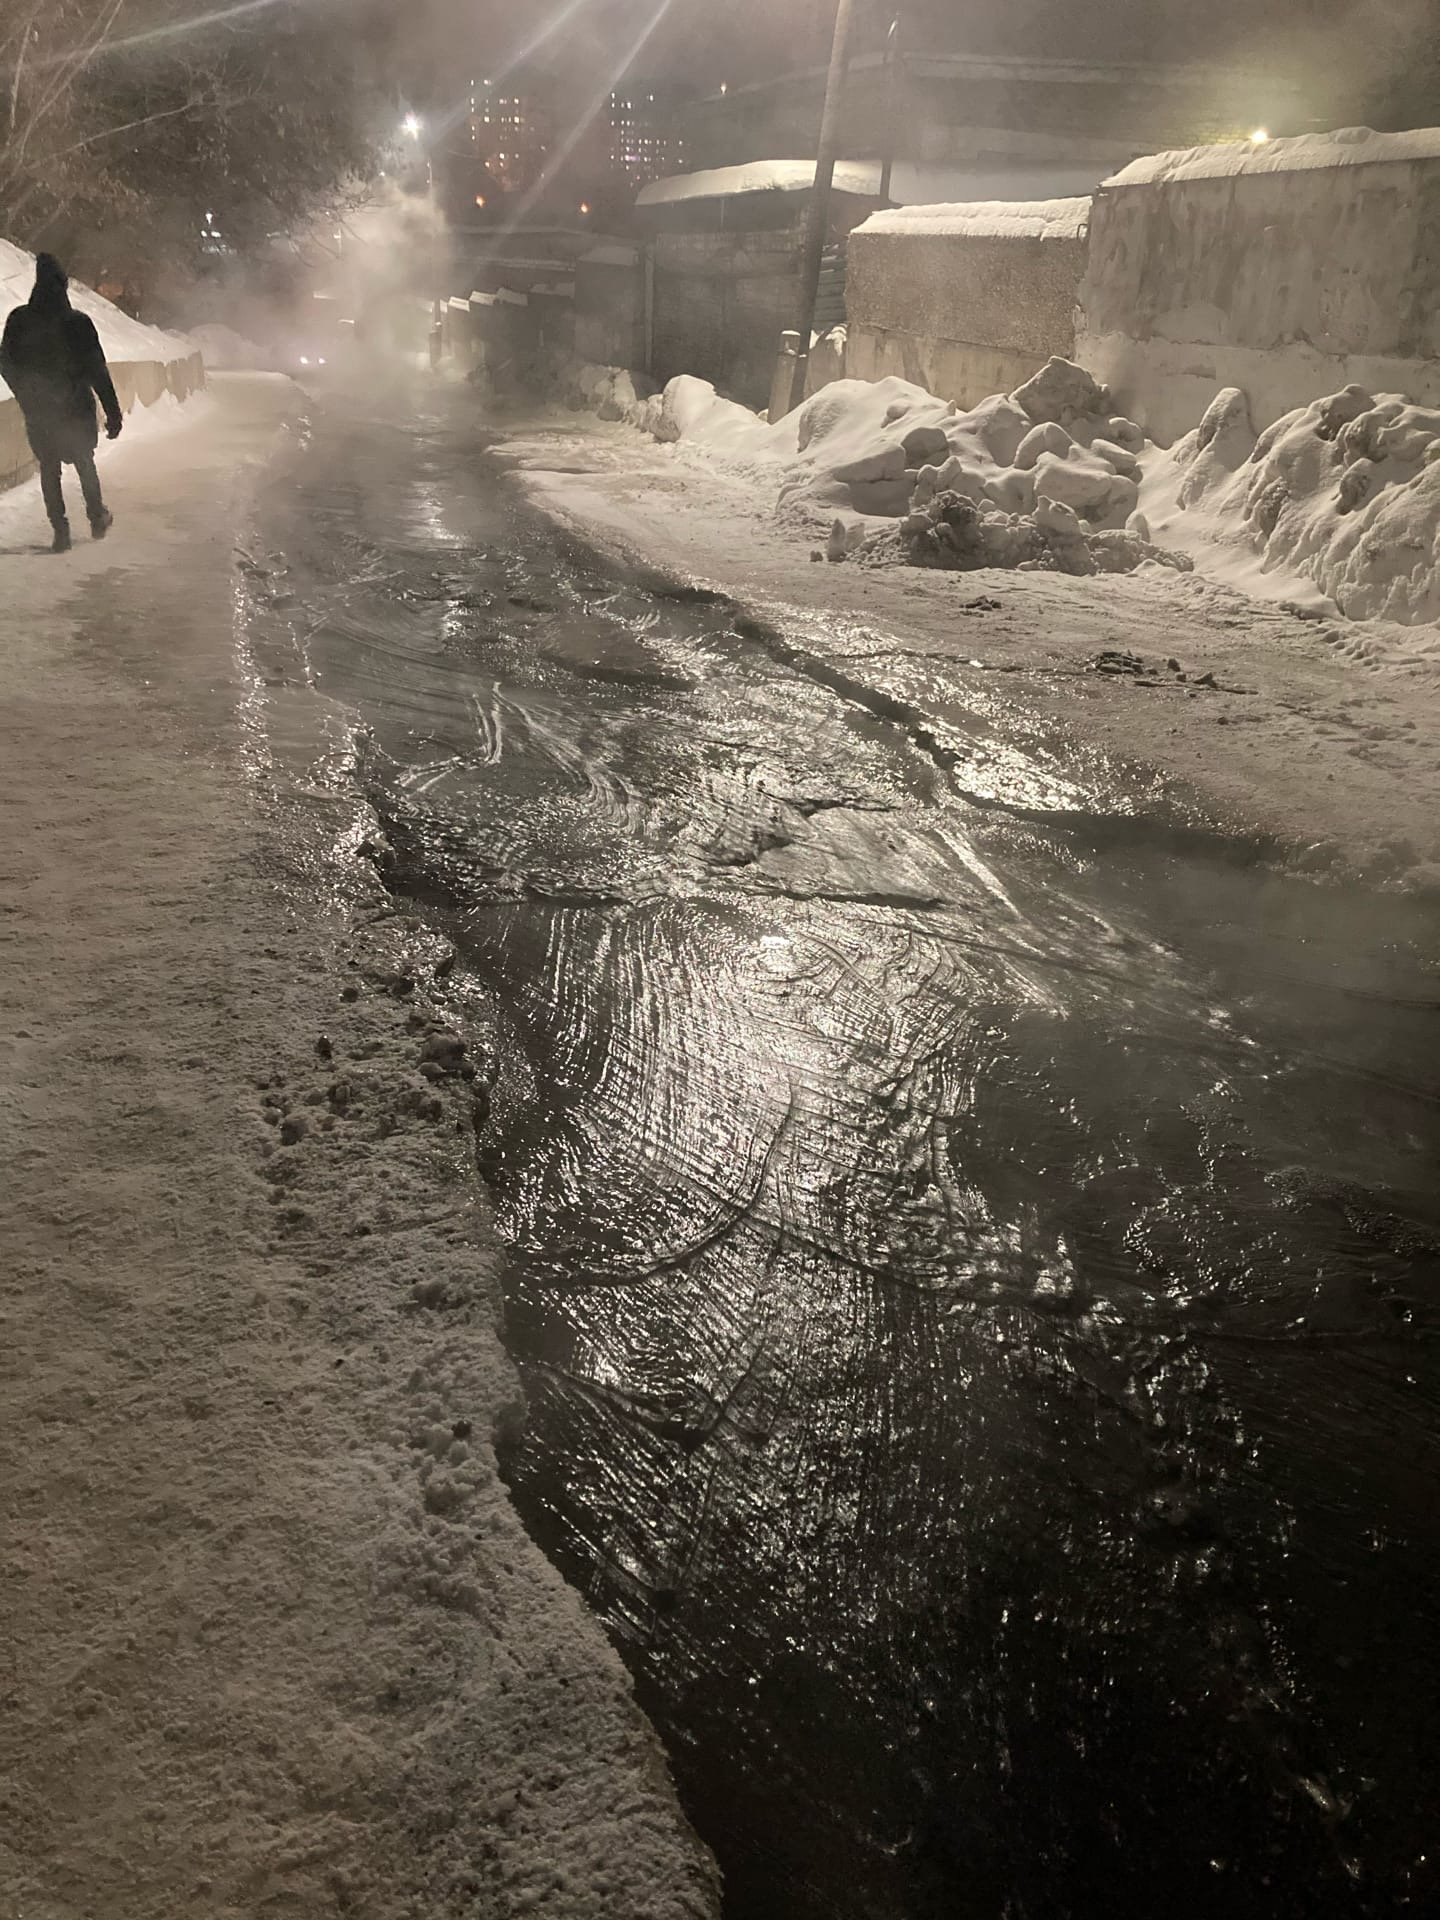 

Жители Ижевска пожаловались на двухдневный потоп улицы Кооперативной

